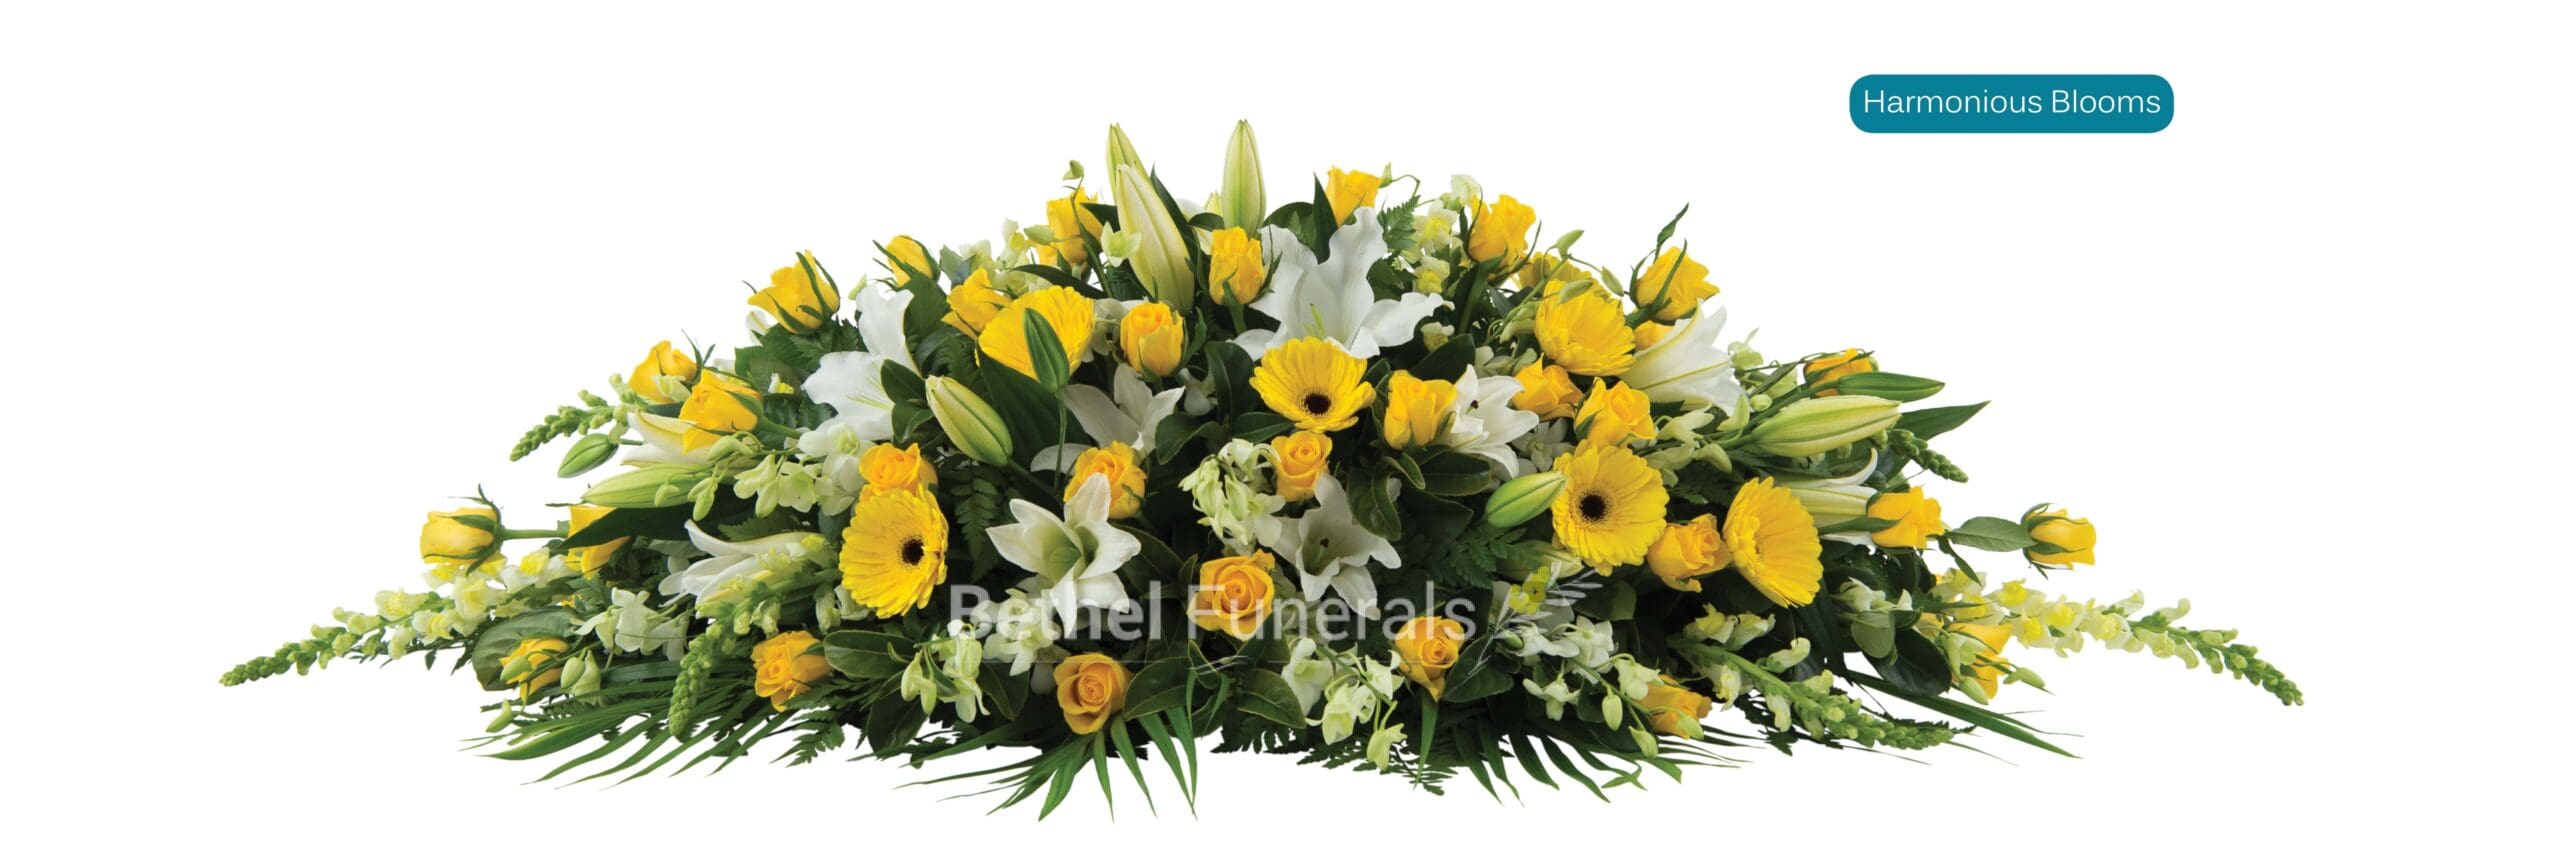 Harmonious Blooms funeral flowers